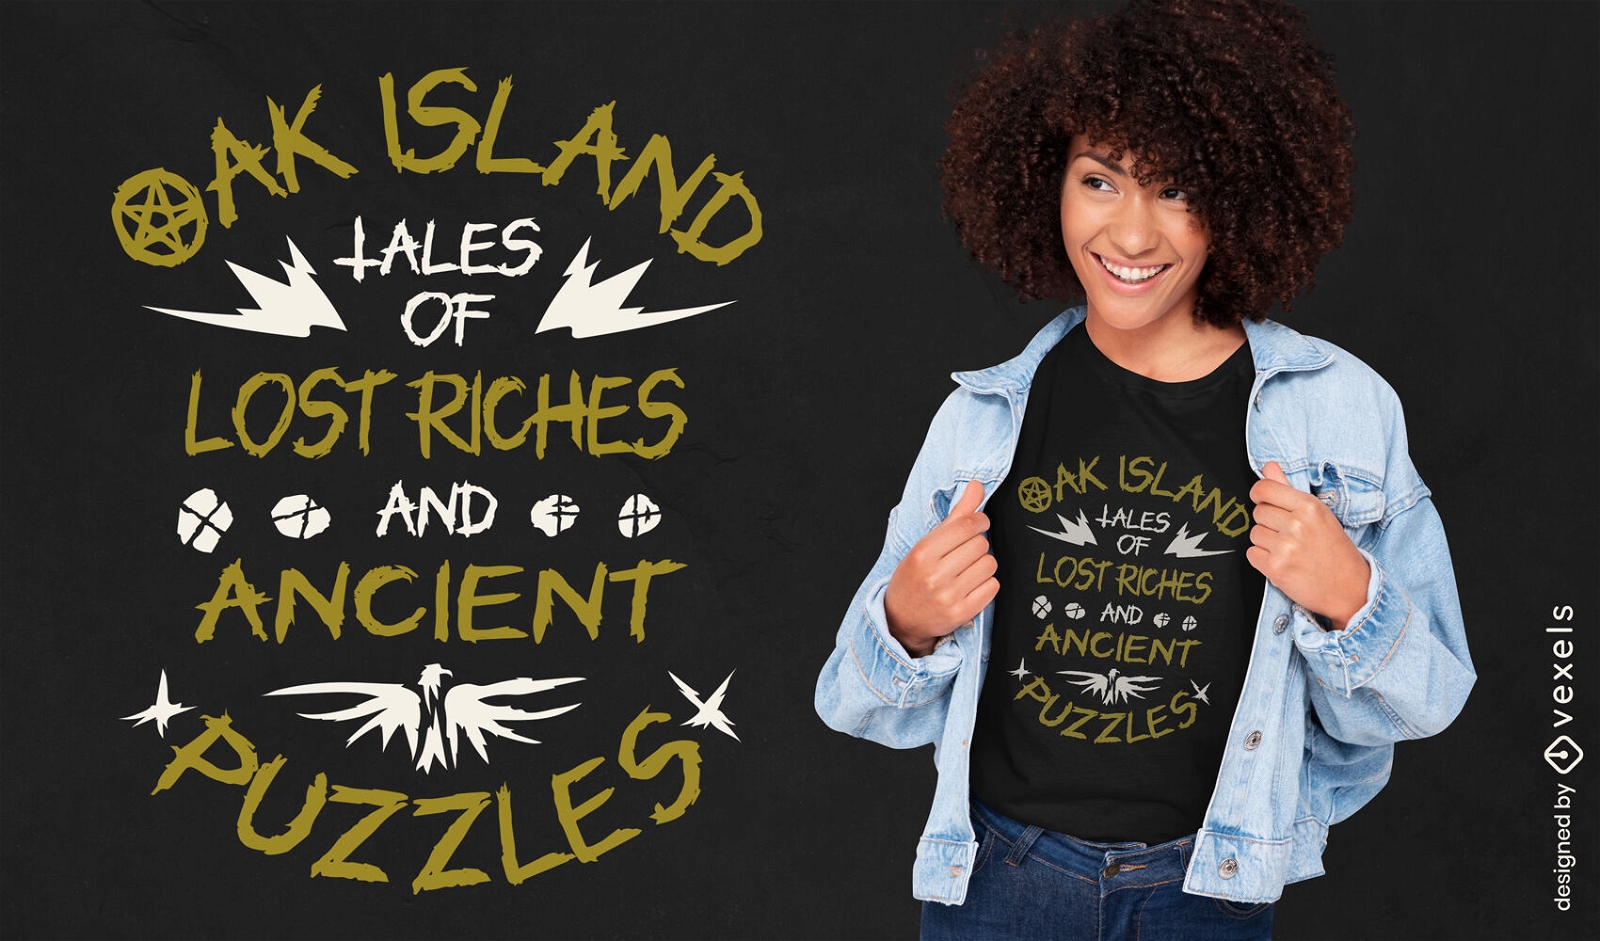 Oak Island valoriza o design de camisetas com quebra-cabe?as antigos